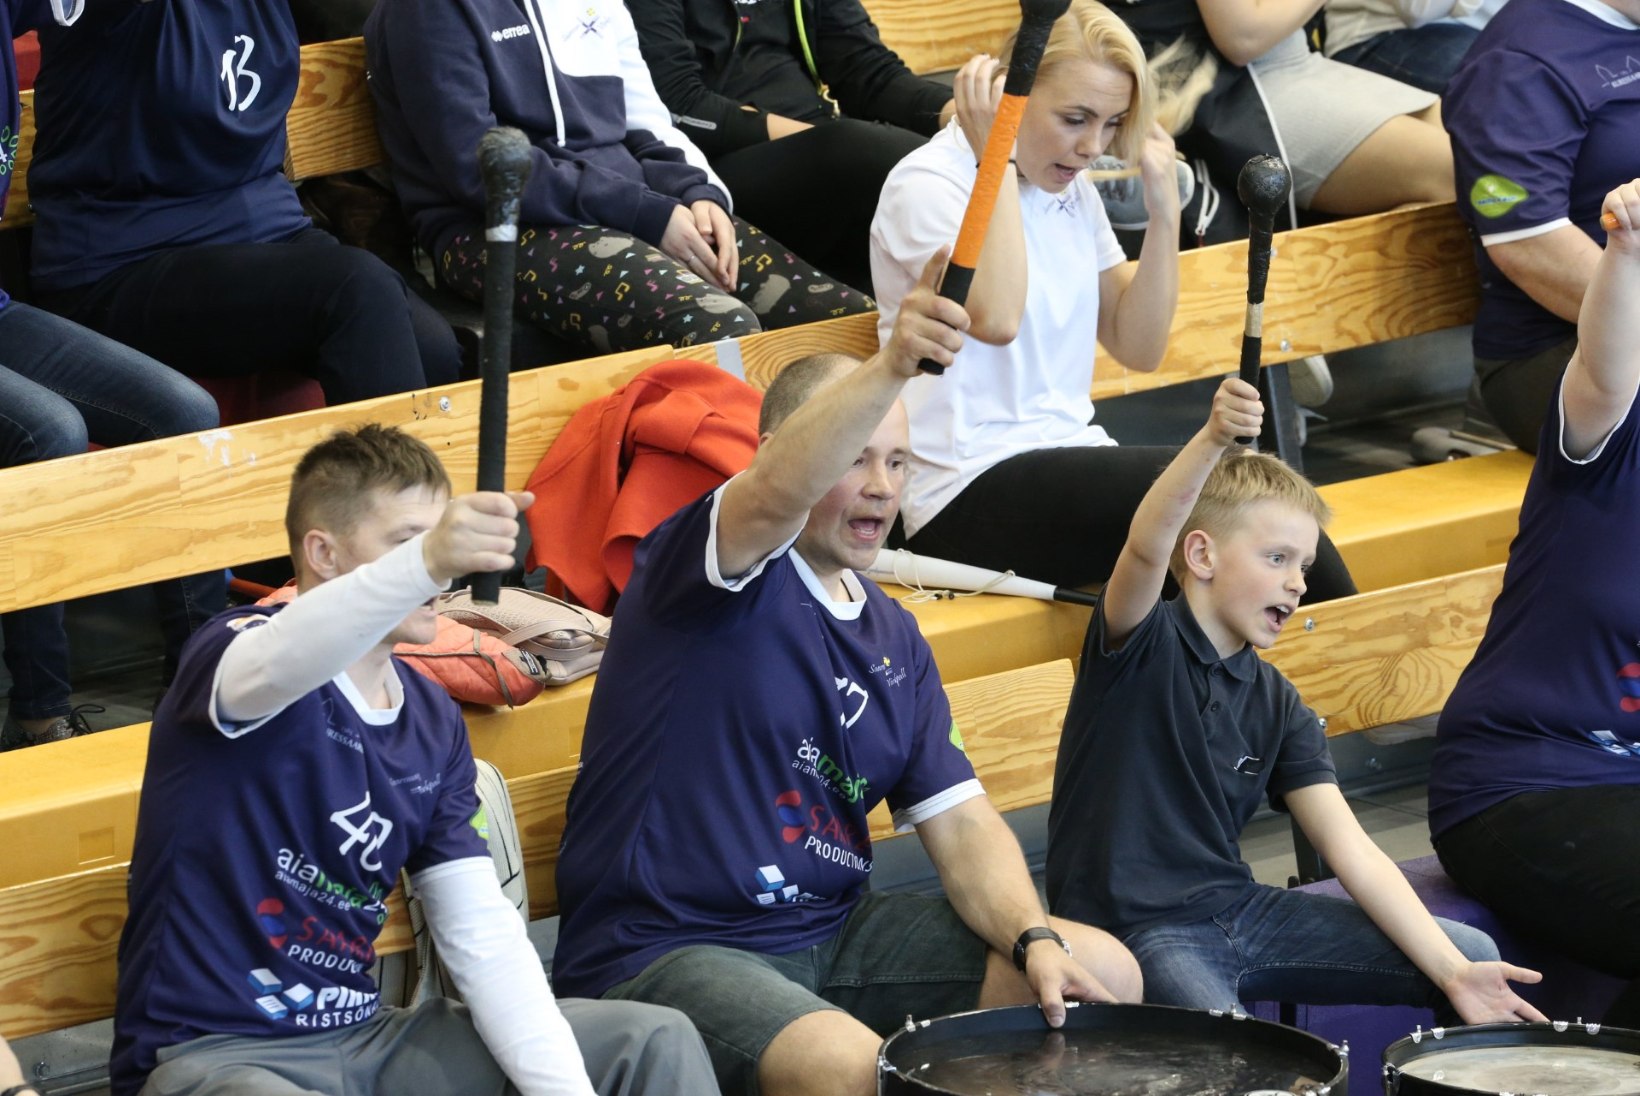 FOTOD | Saarlaste võim! Saaremaa tuli võõrsil Tartu vastu raskest seisust välja ja viigistas finaalseeria